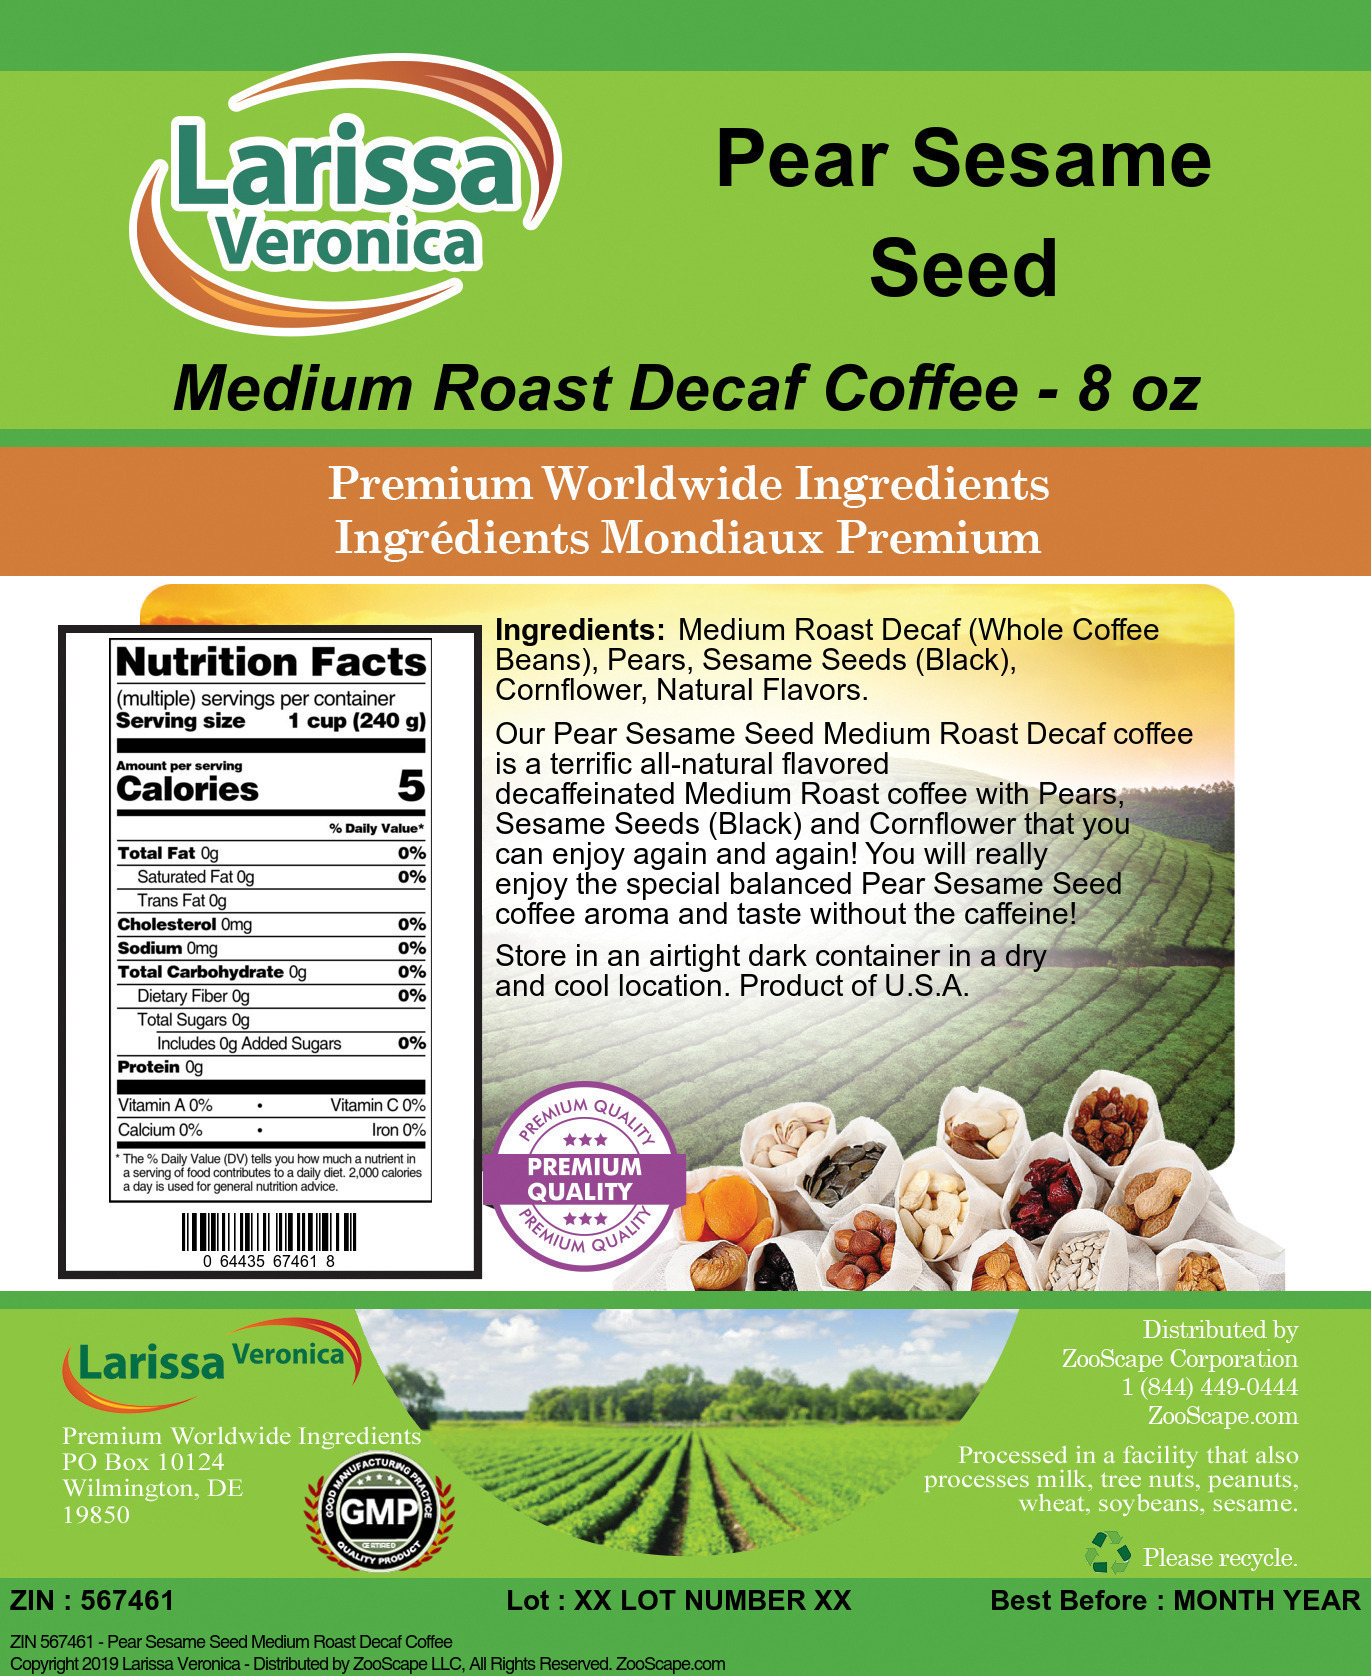 Pear Sesame Seed Medium Roast Decaf Coffee - Label